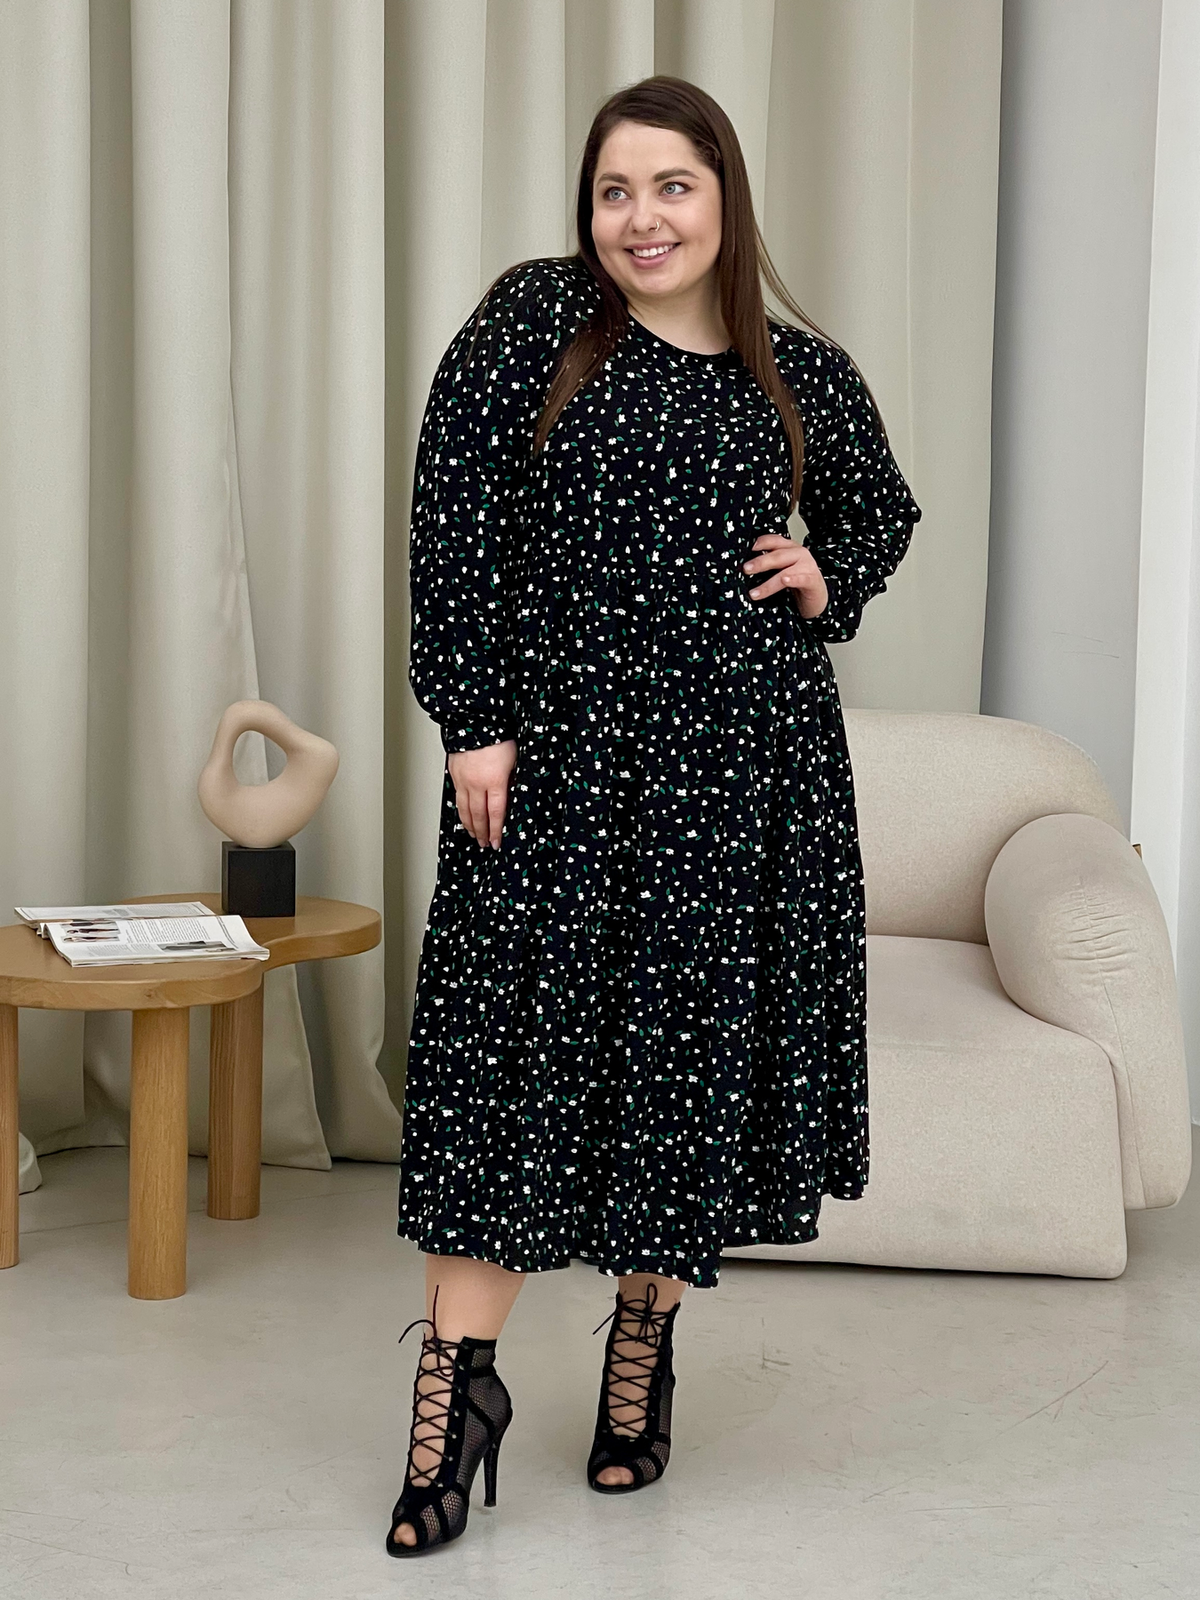 Купить Длинное платье в цветочек из штапеля с длинным рукавом Merlini Корсо 700001184, размер 42-44 (S-M) в интернет-магазине